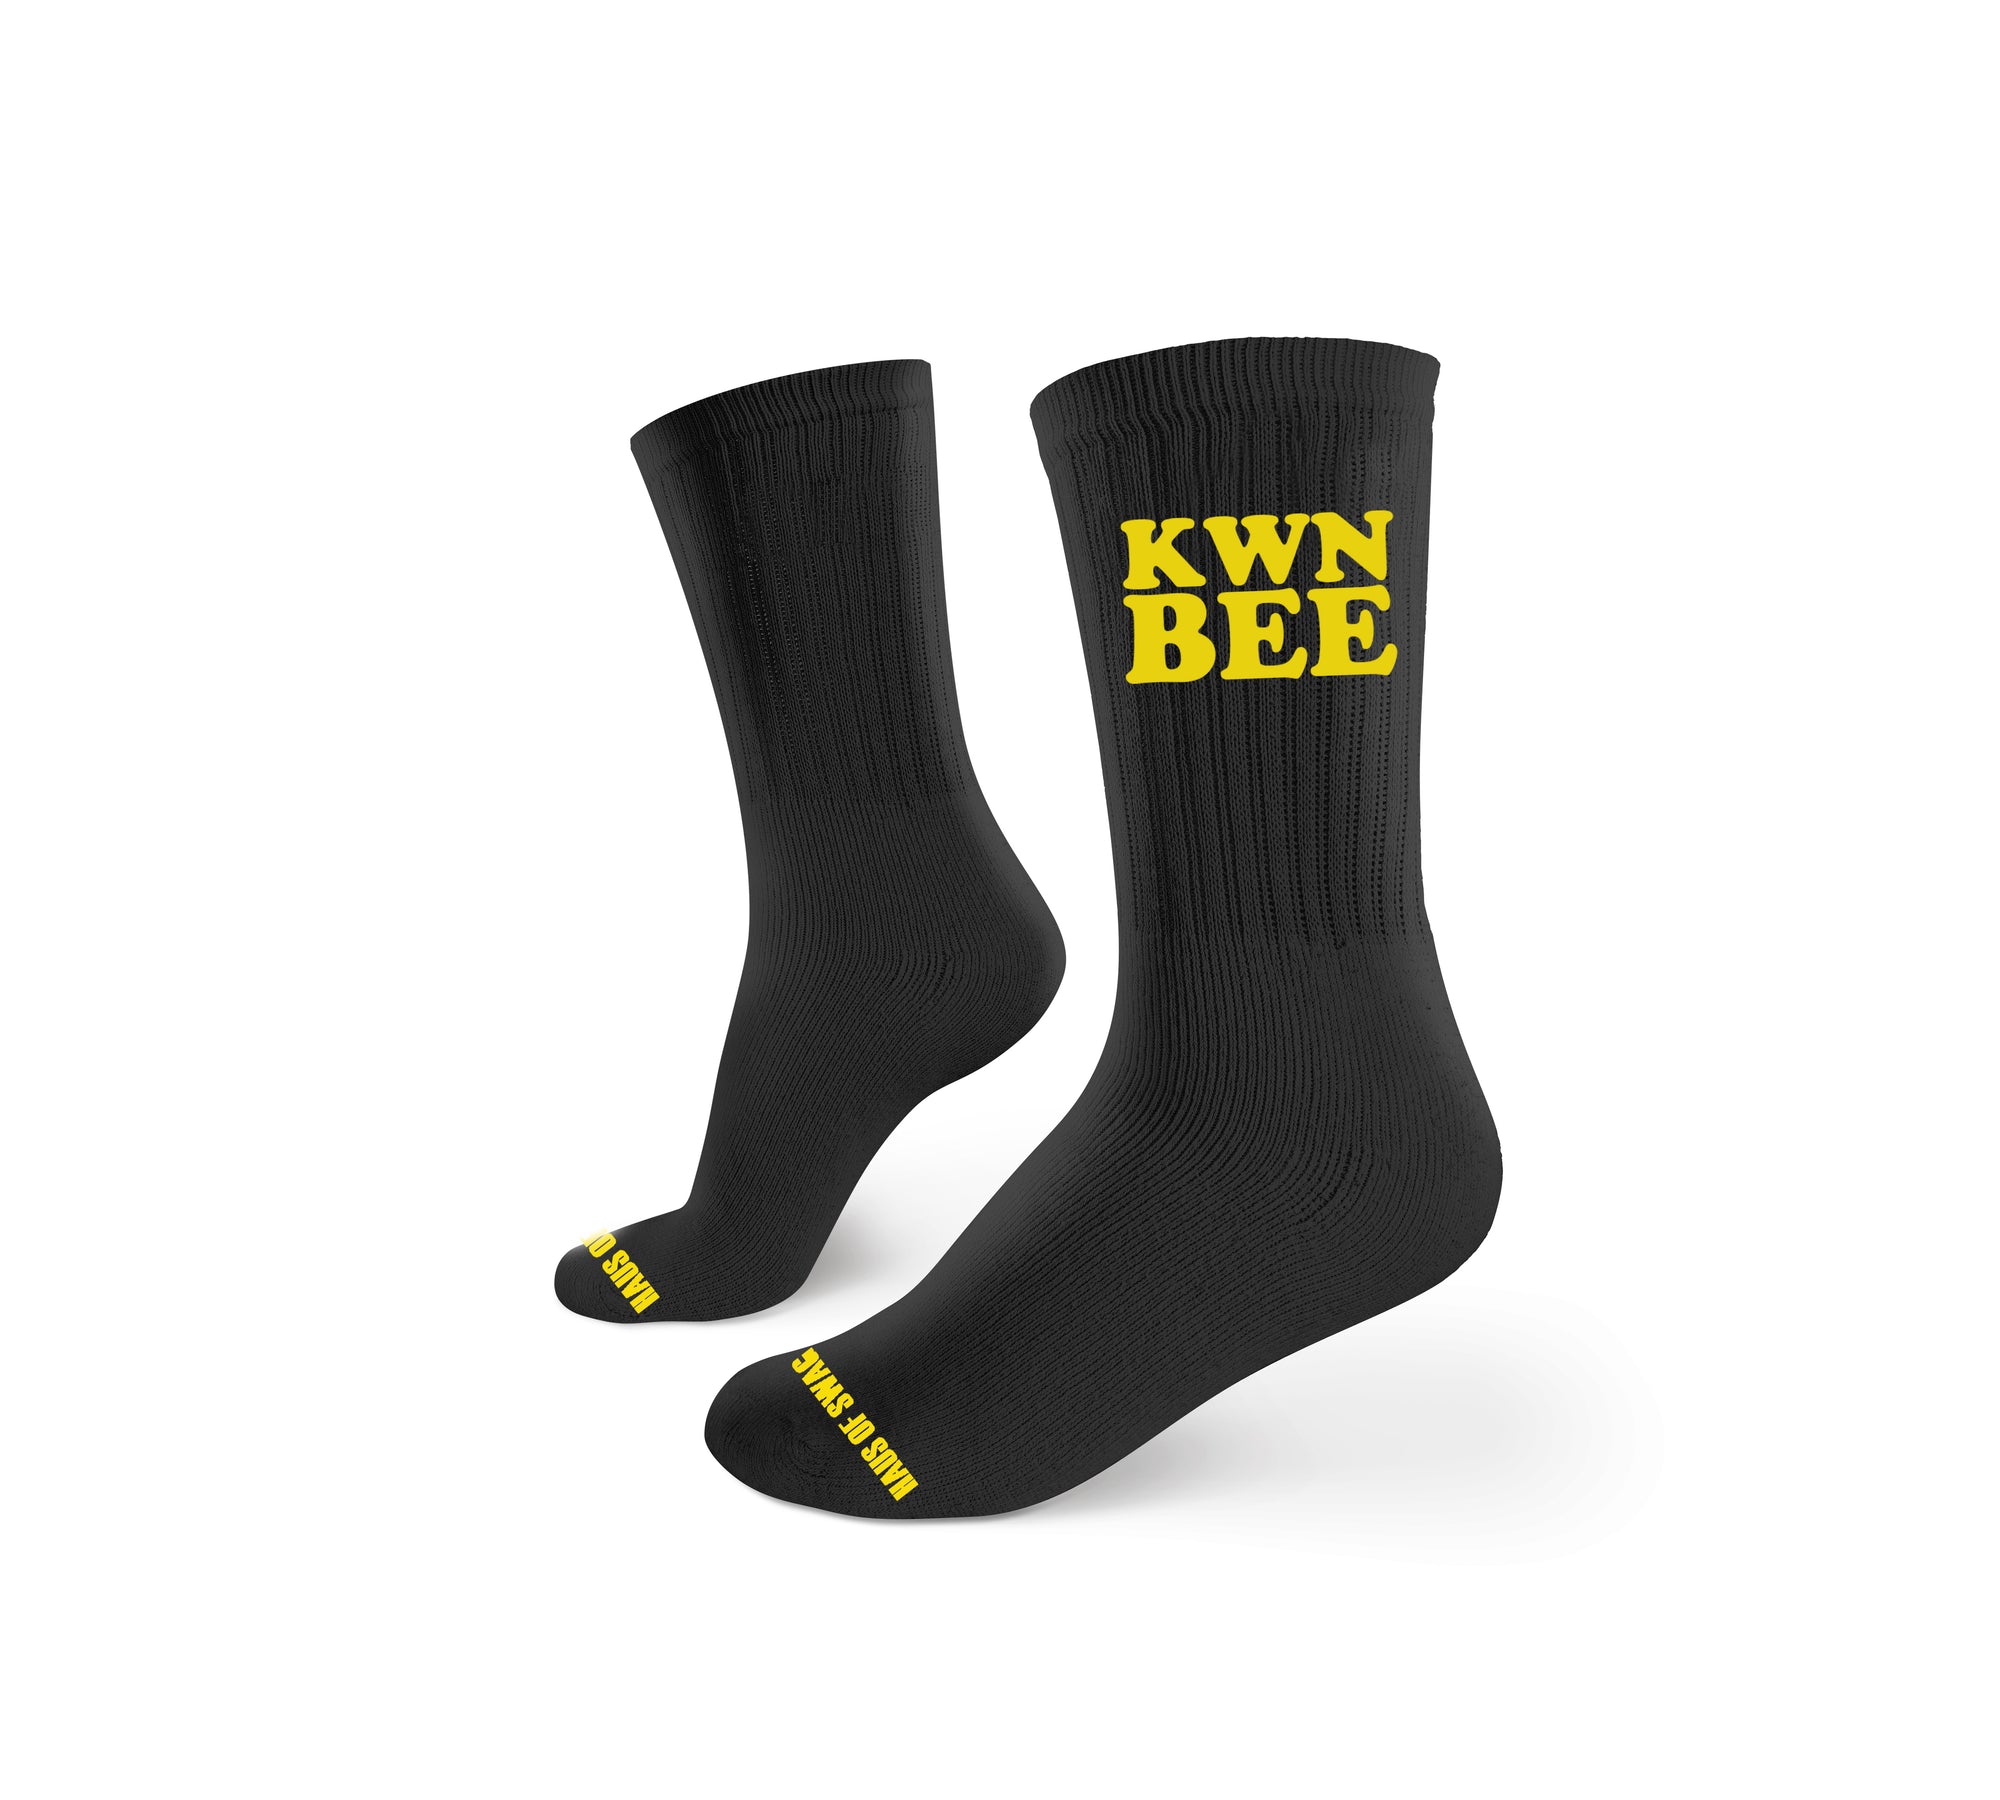 KWN BEE Socks